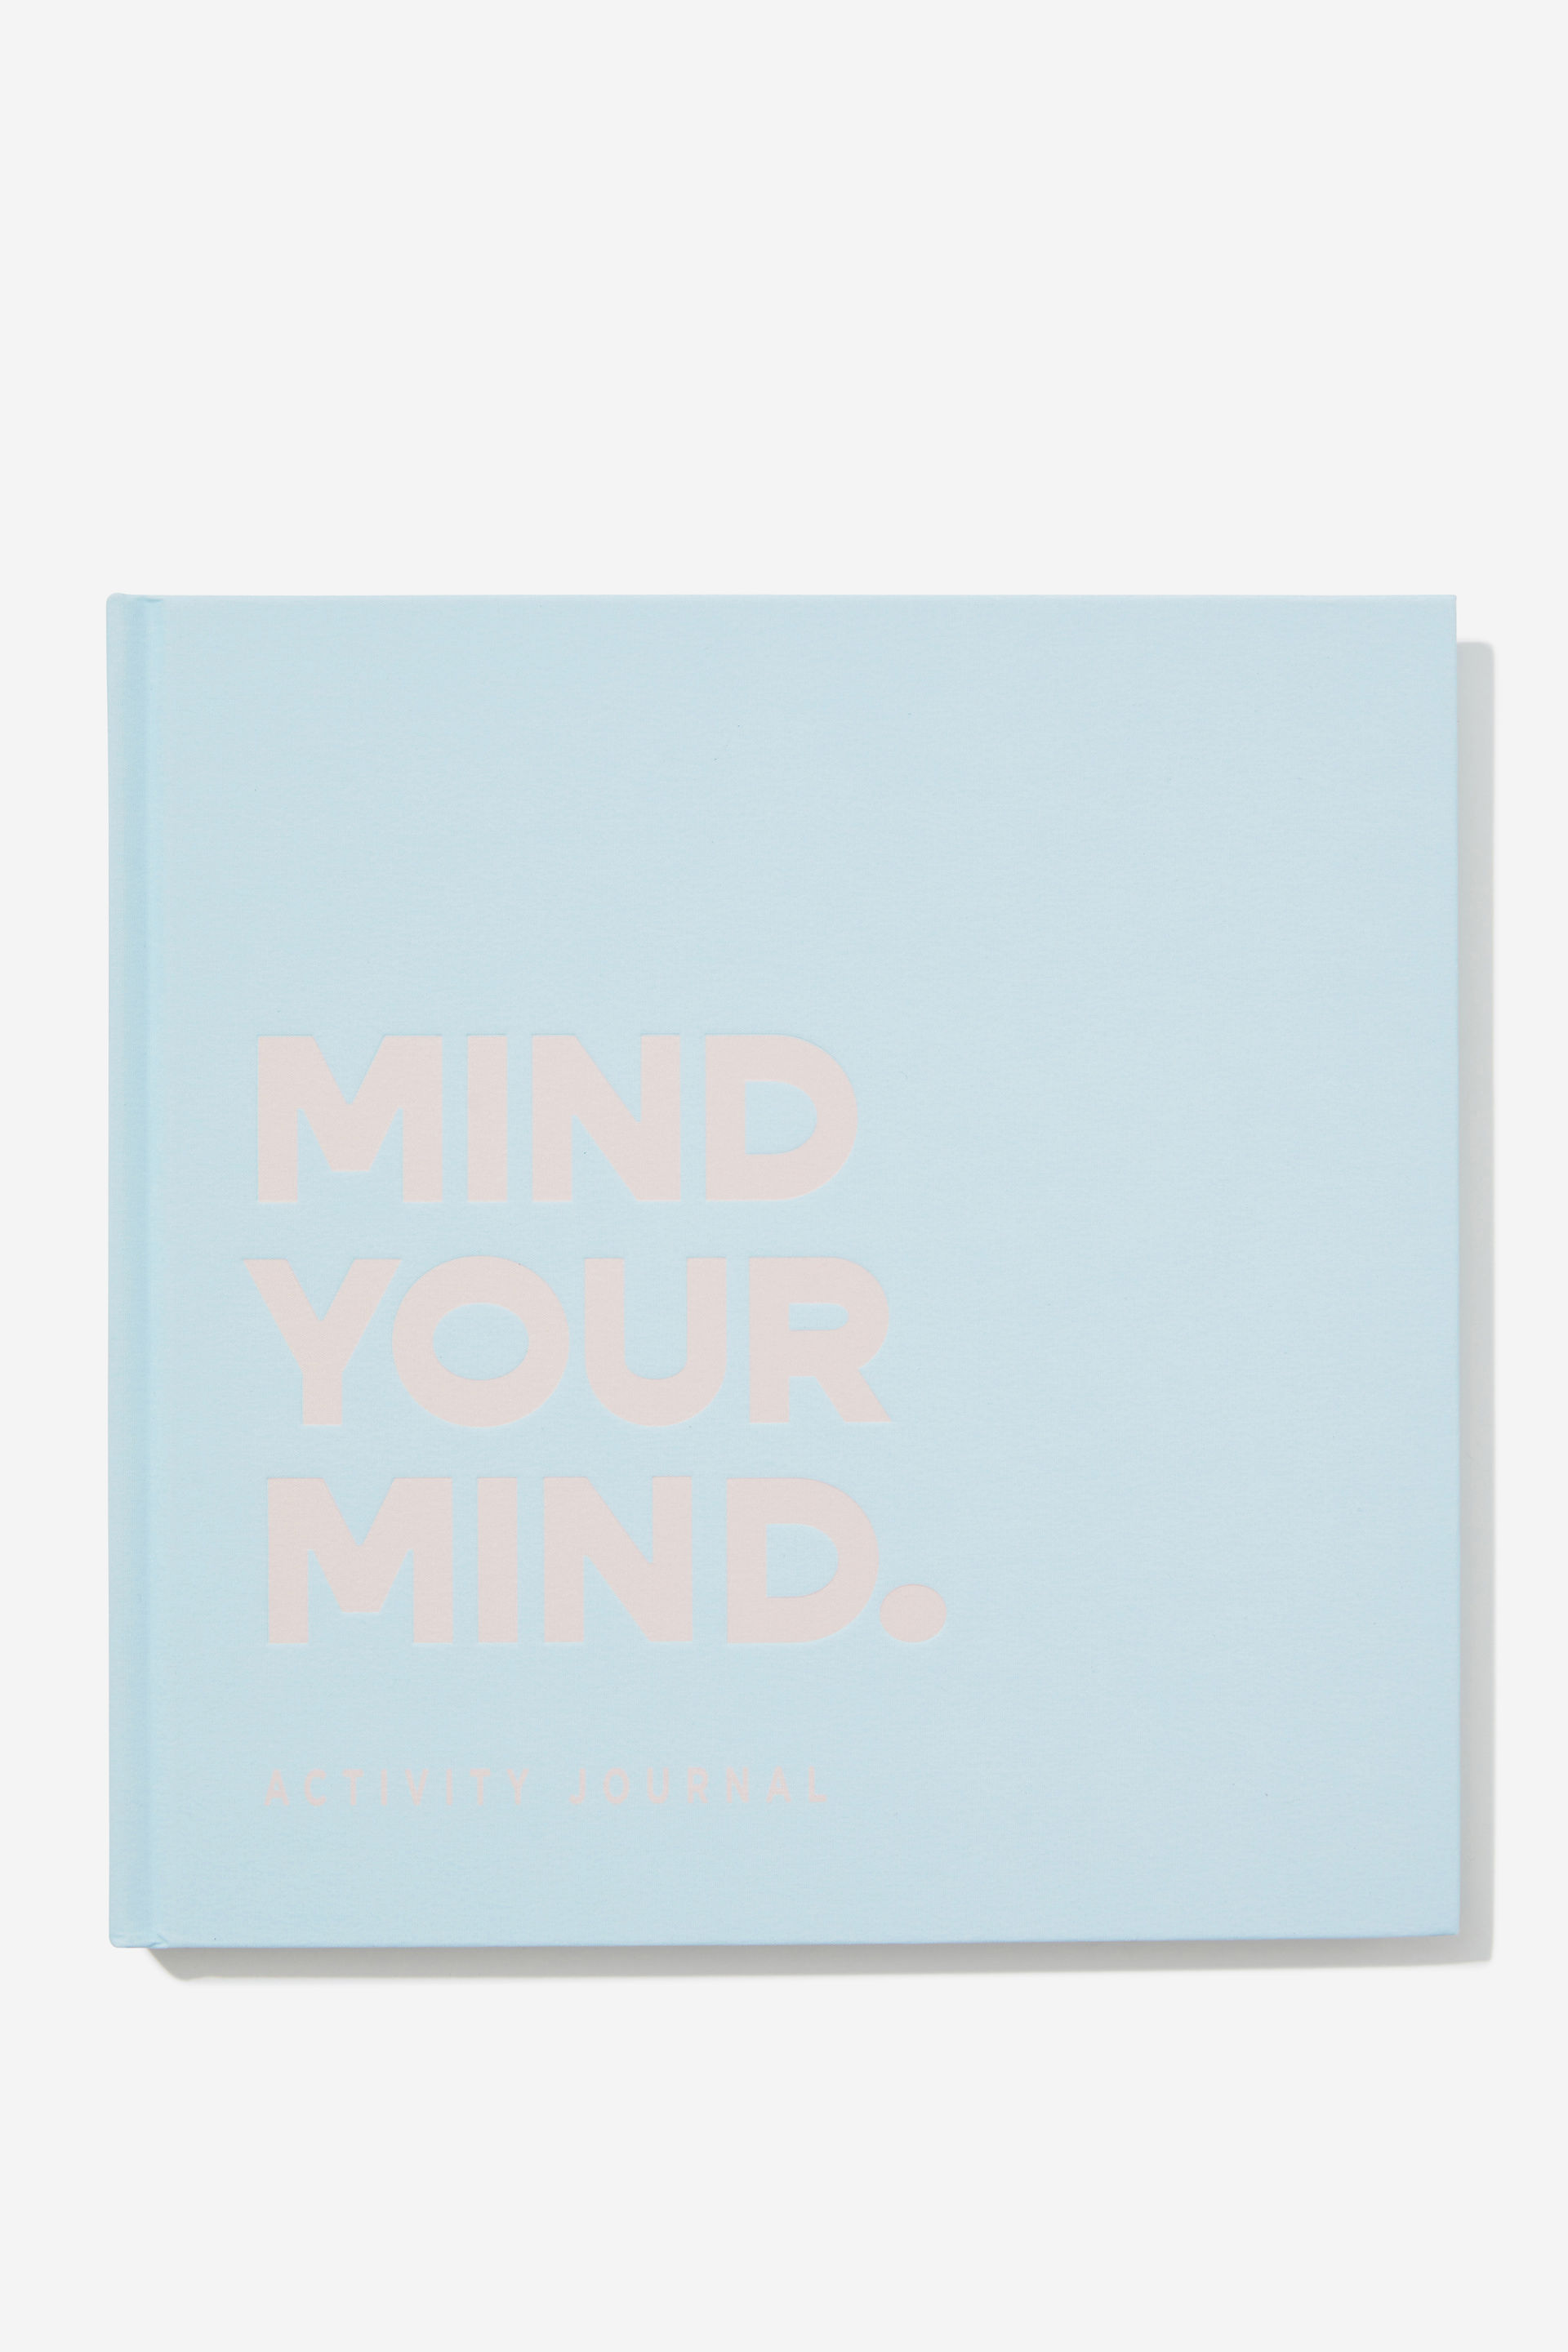 Typo - Premium Activity Journal - Mind your mind vol 6